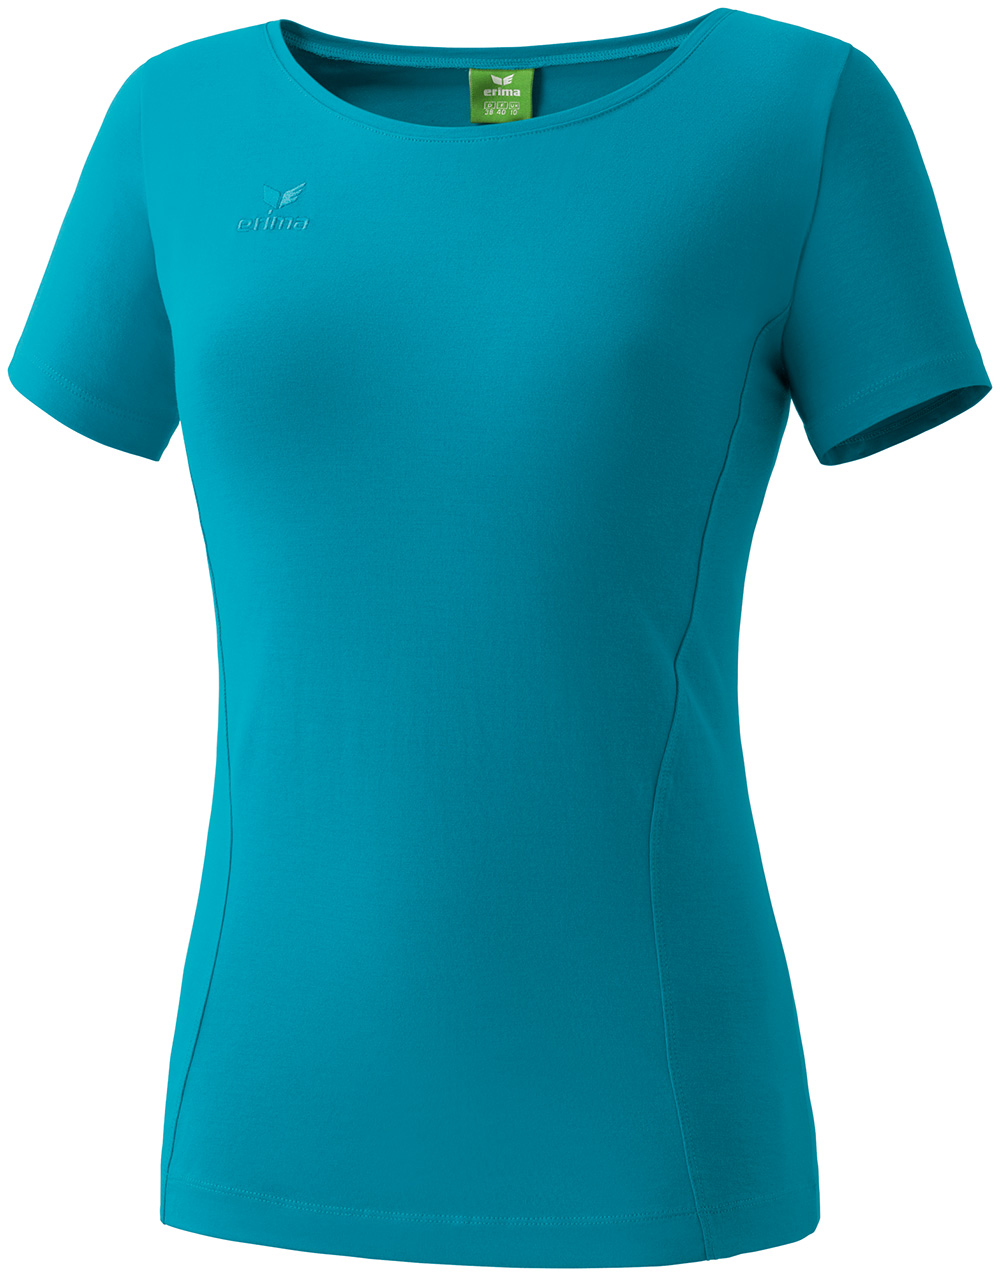 allgaeusport.de - Erima T-Shirt Damen Style